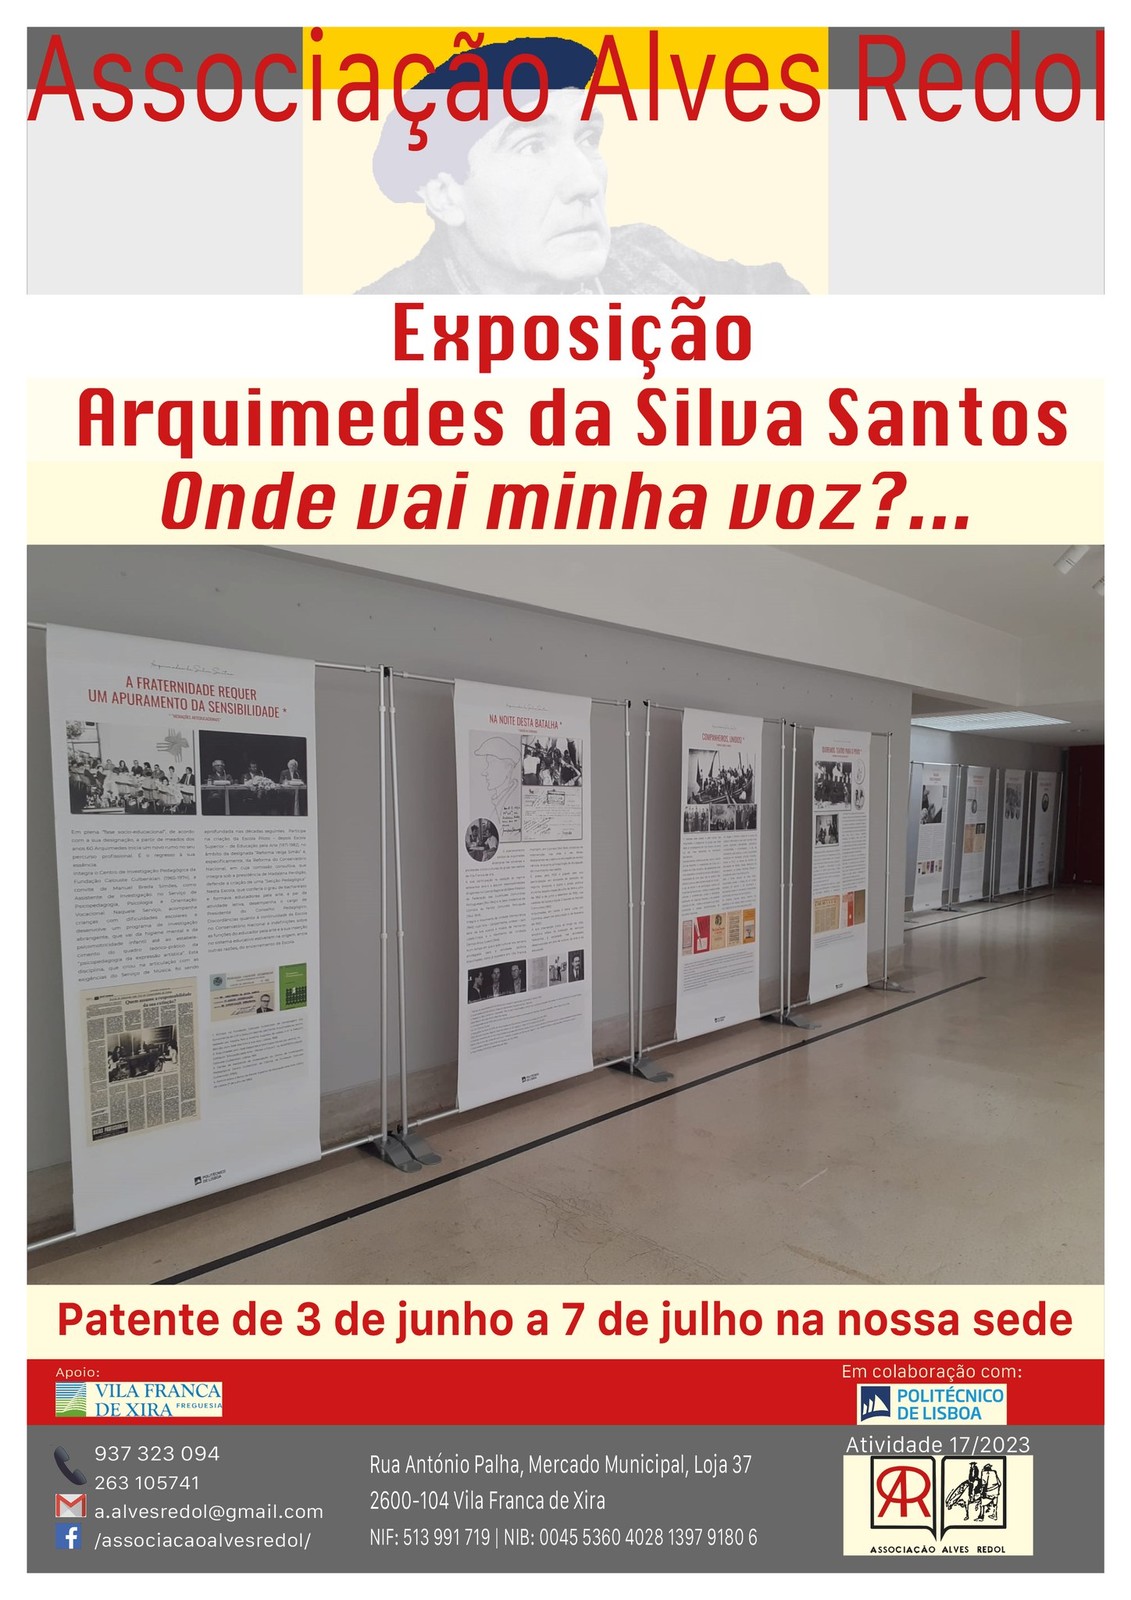 Exposição Arquimedes da Silva Santos - Onde vai a minha voz?...